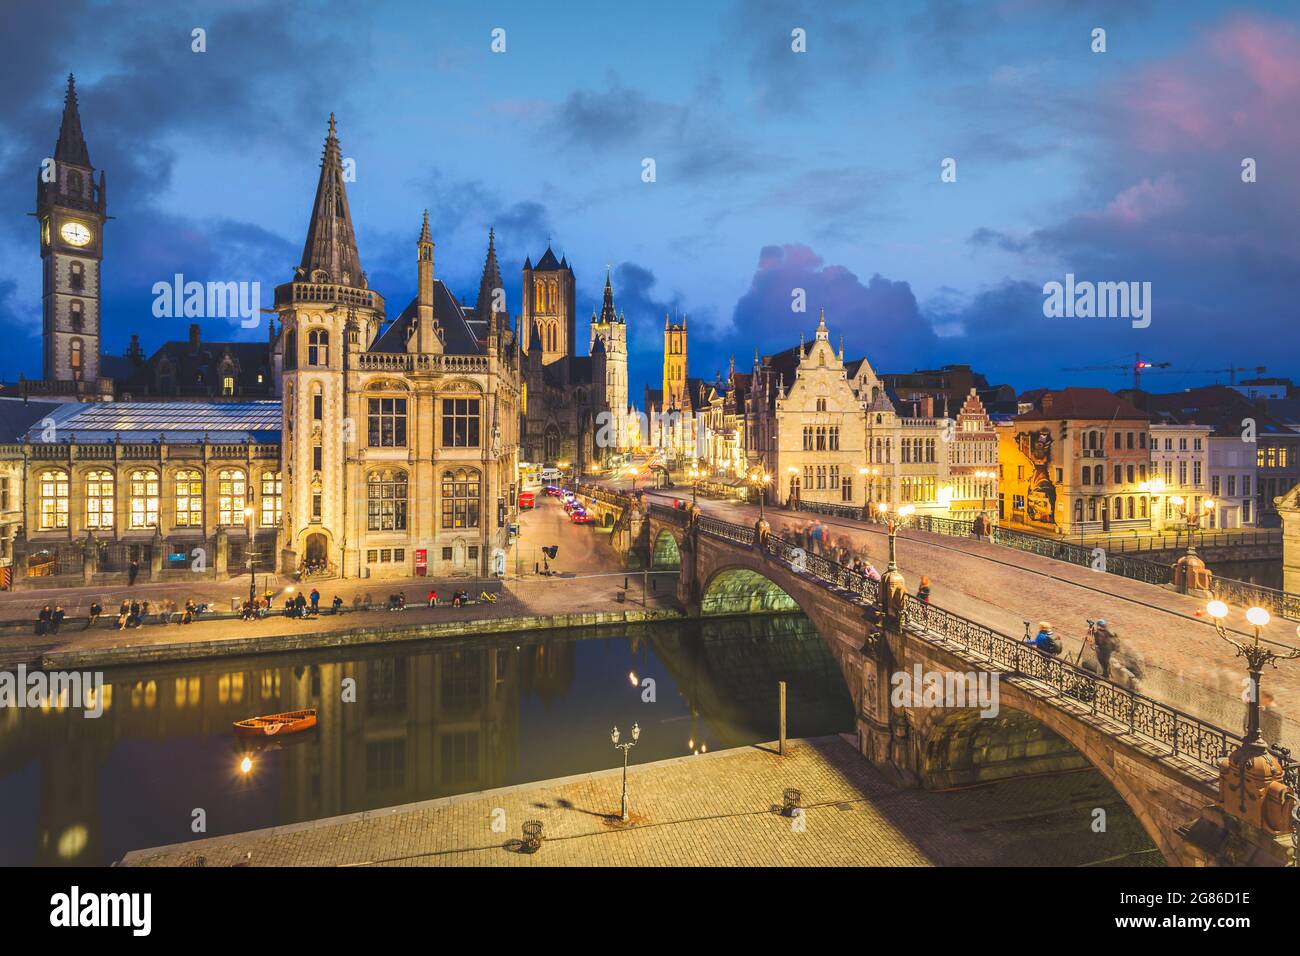 Haut point de vue de la ville médiévale de Gand en Flandre avec l'église Saint-Nicolas et l'hôtel de ville de Gand, Belgique. Coucher de soleil sur le paysage urbain de Gand. Banque D'Images